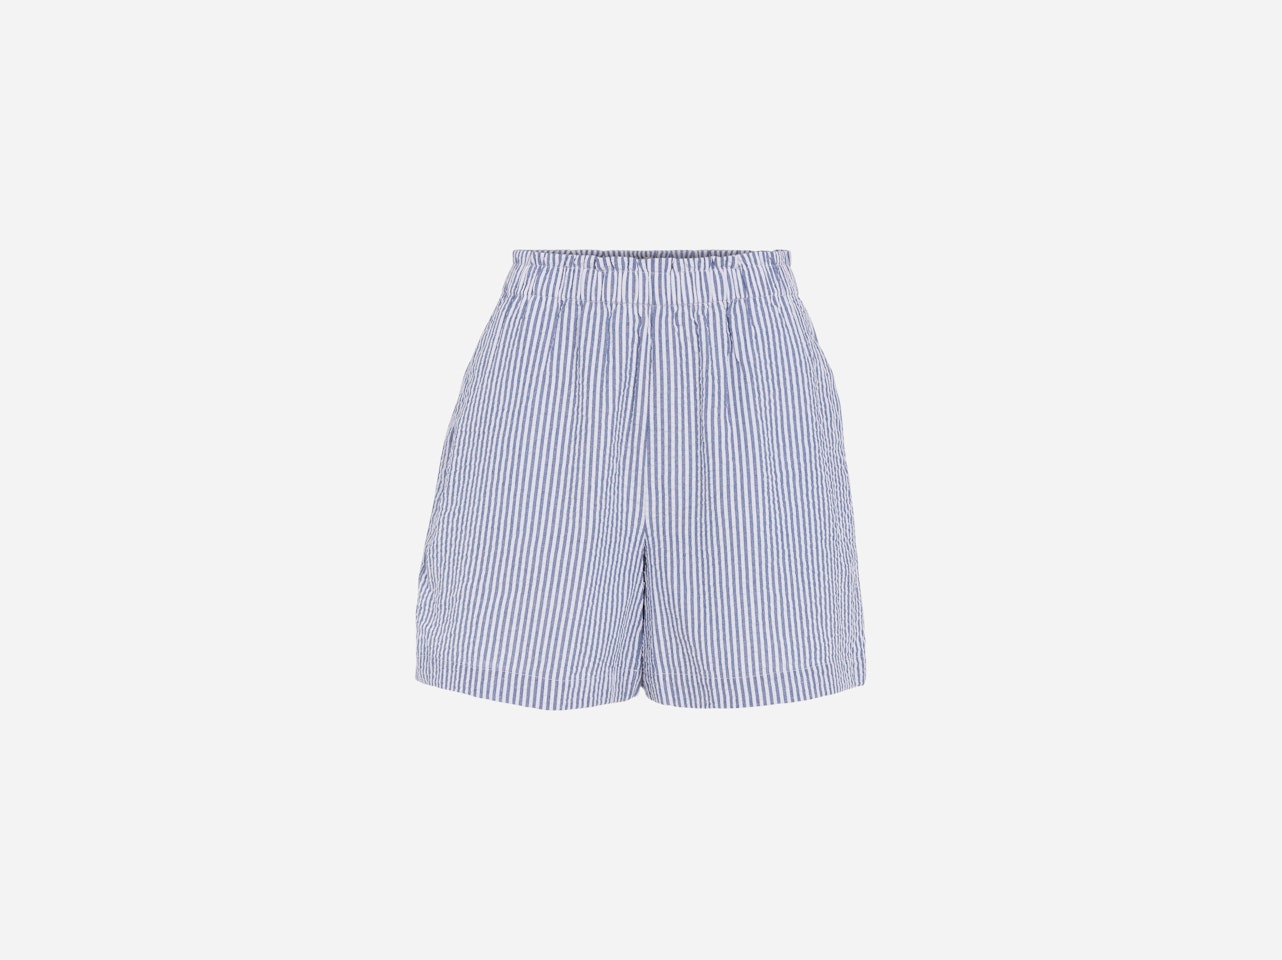 Bild 7 von Summer shorts striped in white blue | Oui